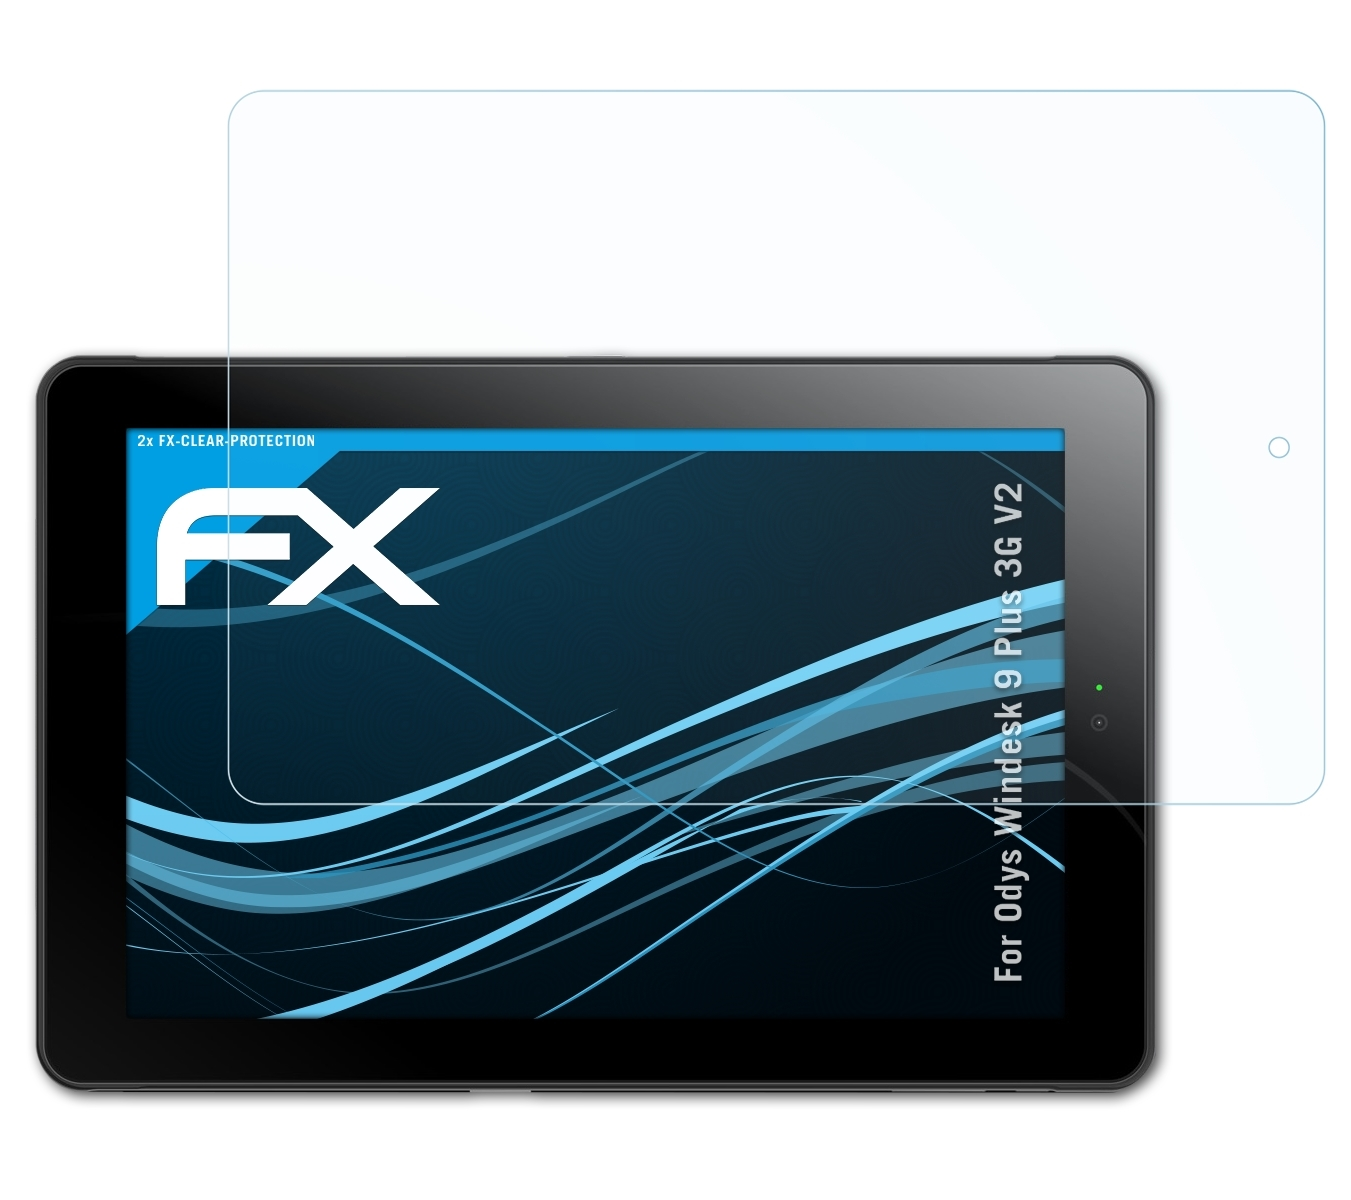 ATFOLIX 2x FX-Clear Displayschutz(für Odys Windesk 9 Plus V2) 3G